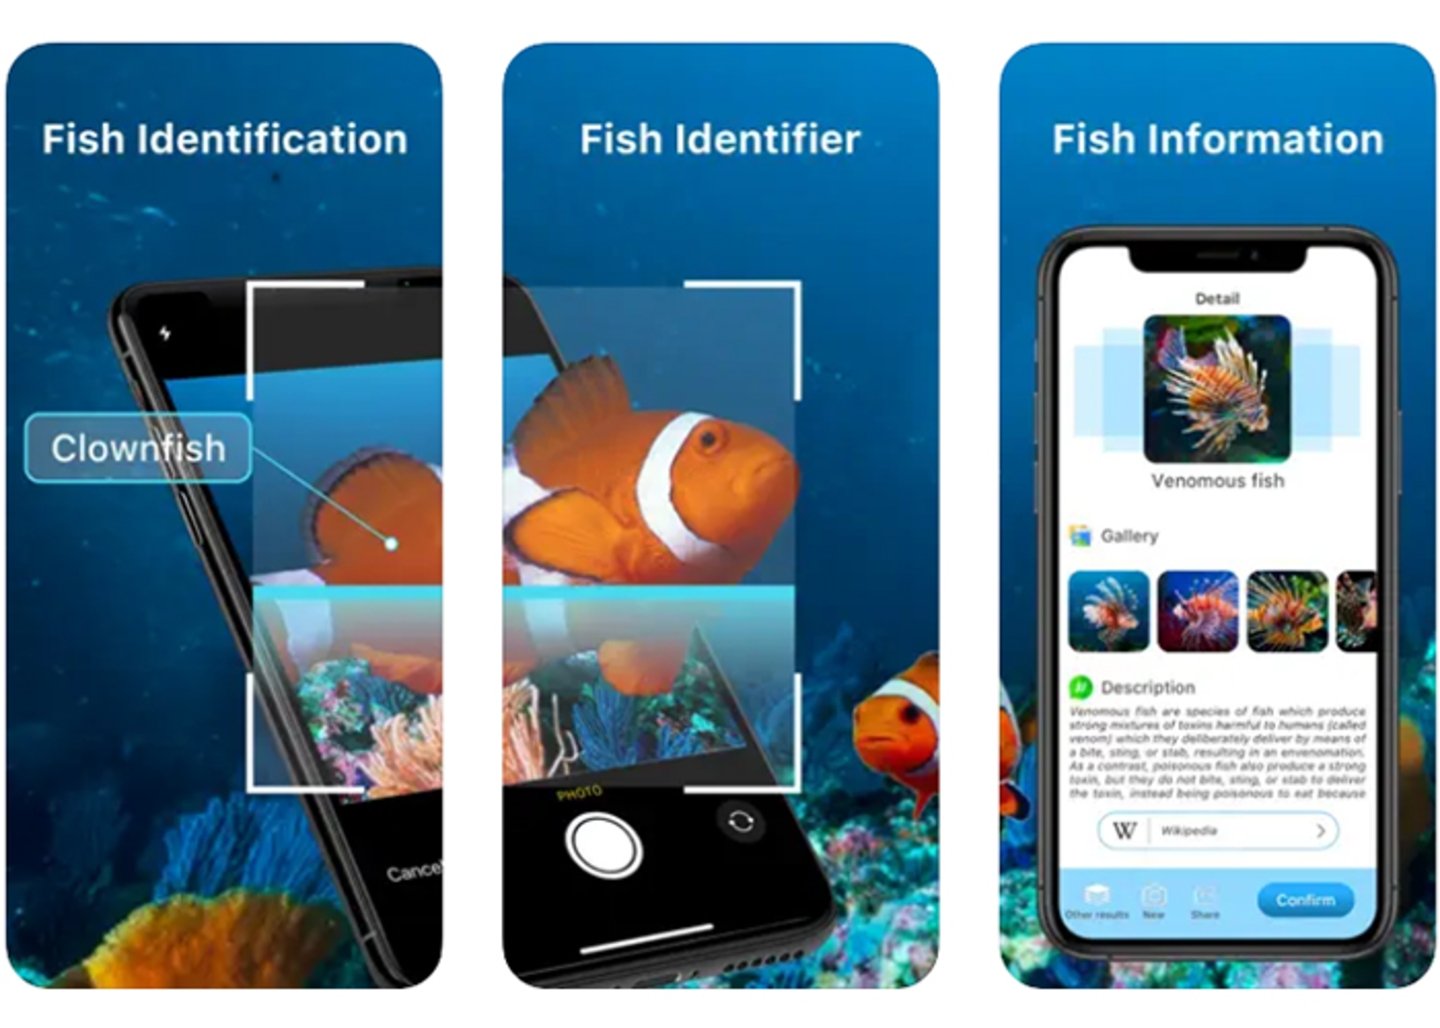 Conviertete en un experto en peces con Fish Identifier - Fish ID